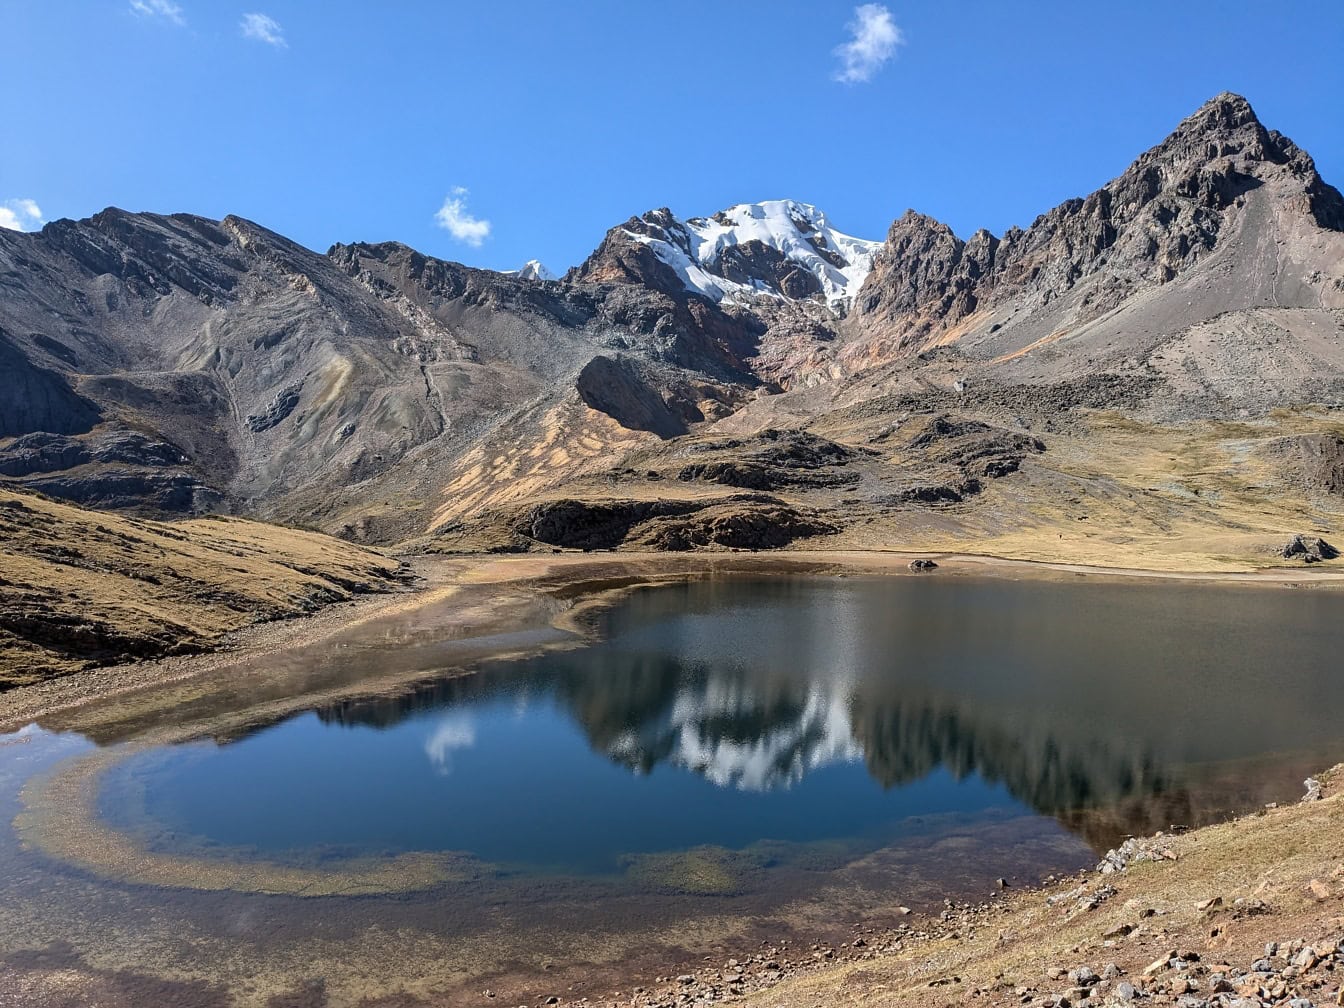 Sø i bjergene ved Paso de Carhuac-passet i Cordillera Huayhuash-bjergkæden i Peru, en naturskøn udsigt over Sydamerika